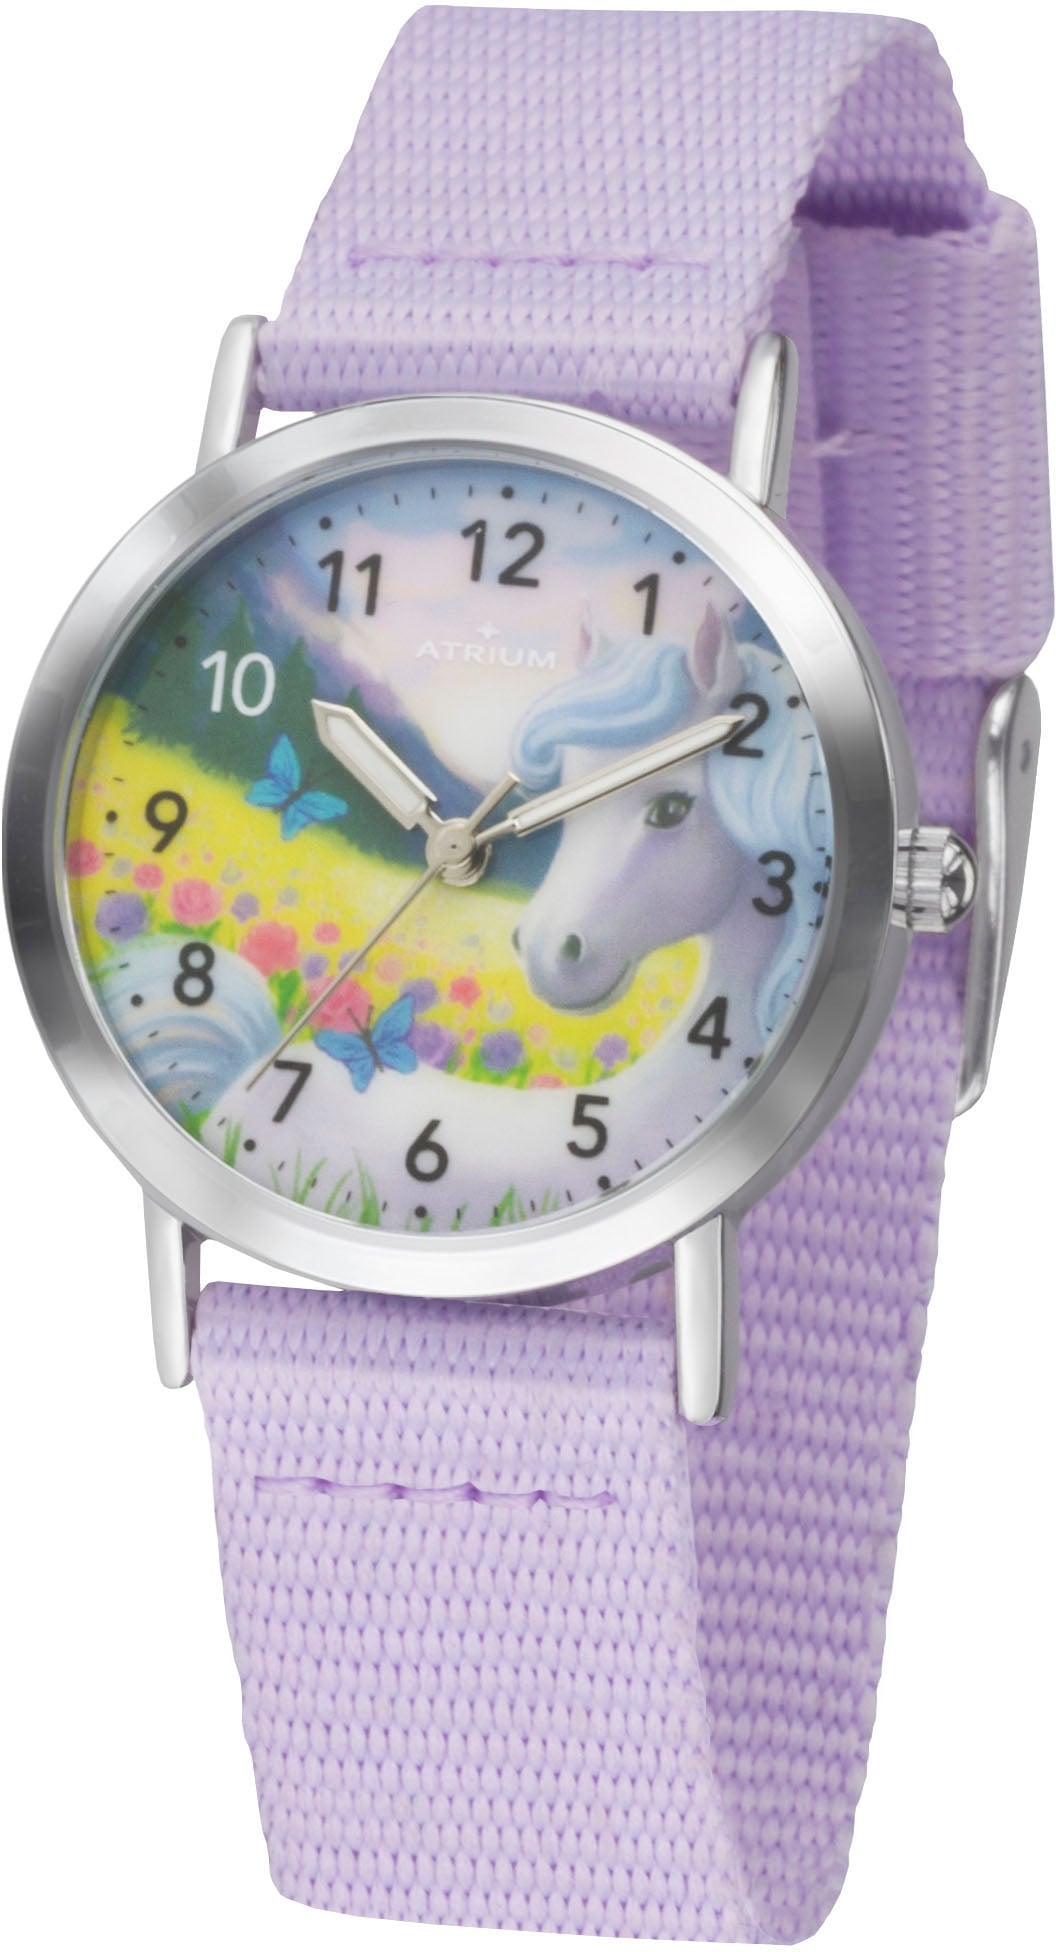 Quarzuhr »A44-18«, Armbanduhr, Kinderuhr, Mädchenenuhr, ideal auch als Geschenk